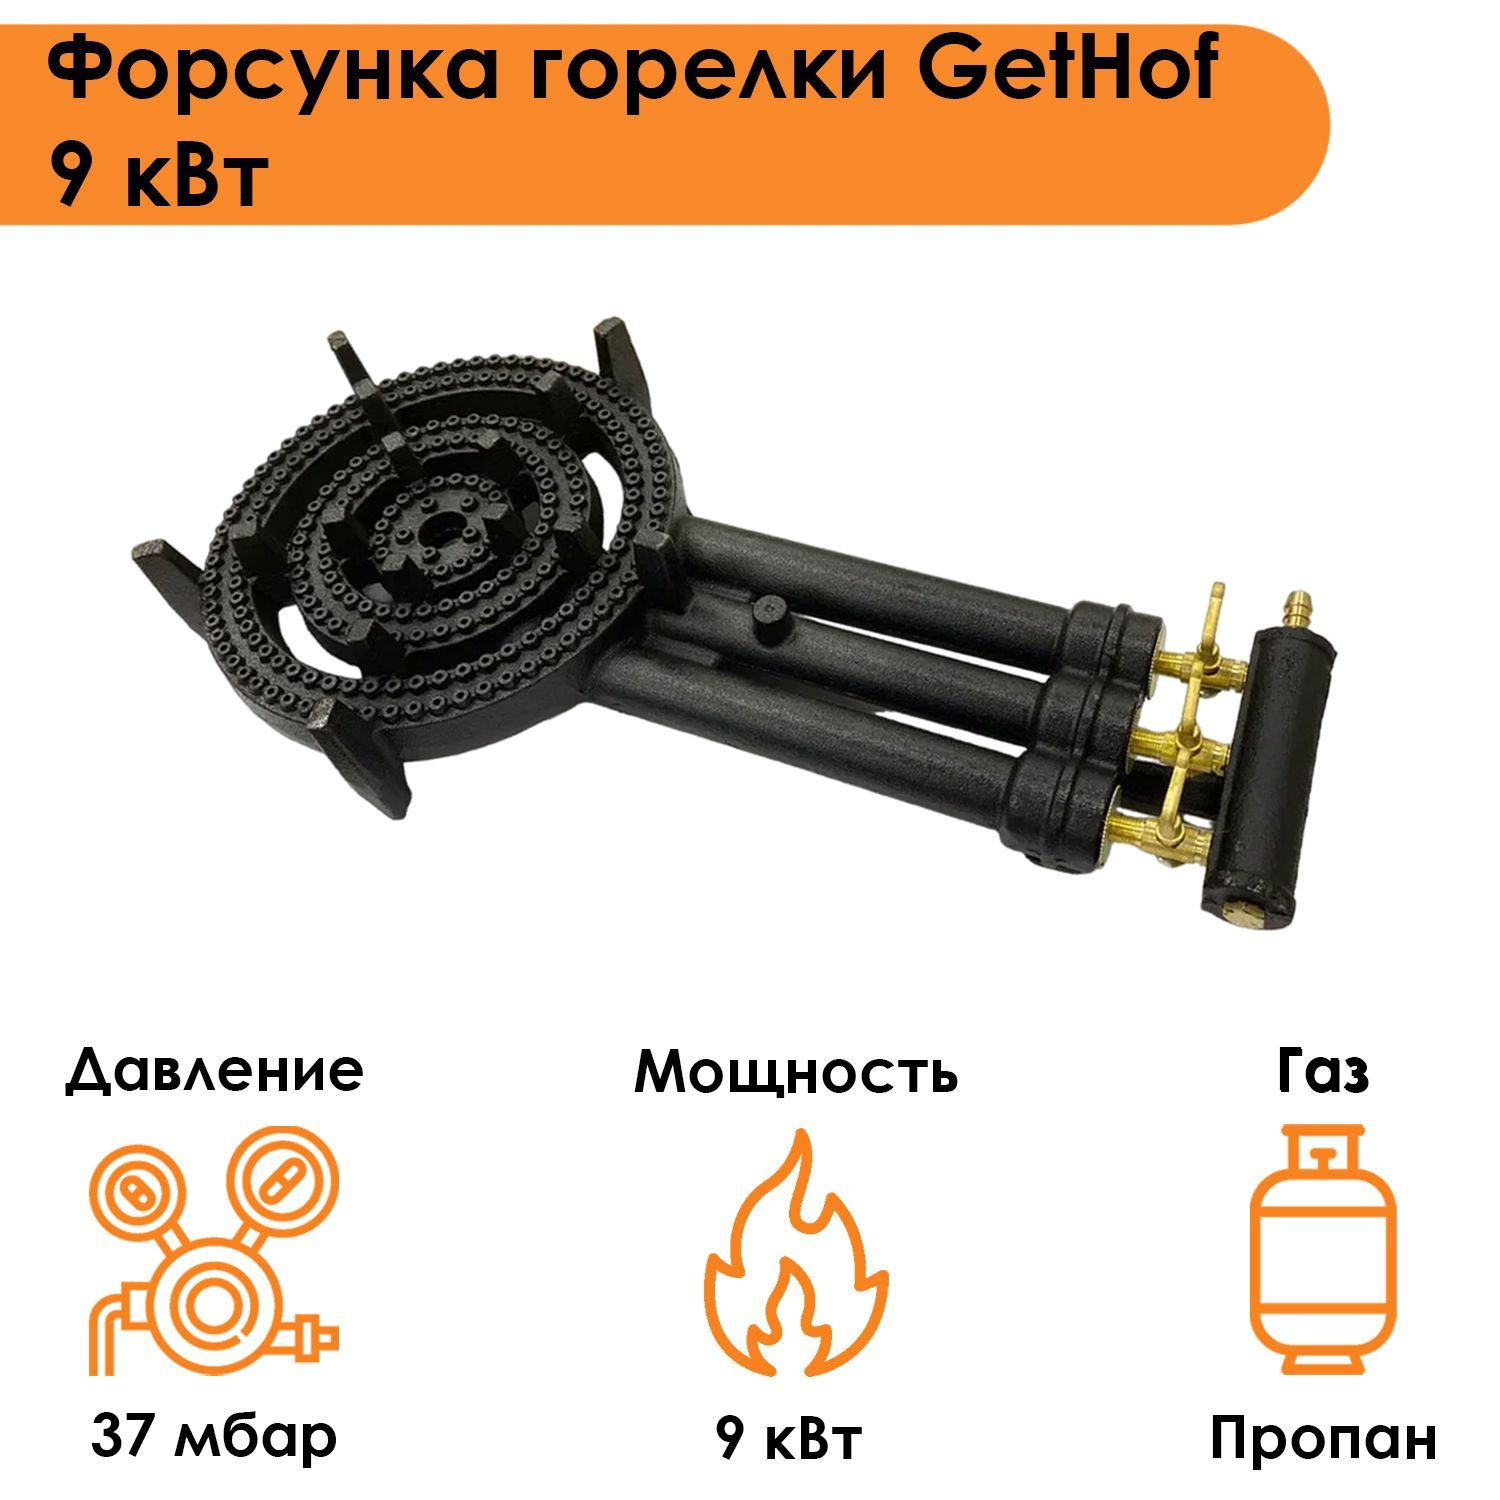 Форсунка горелки GetHof 9 кВт GB-9P (пропан)